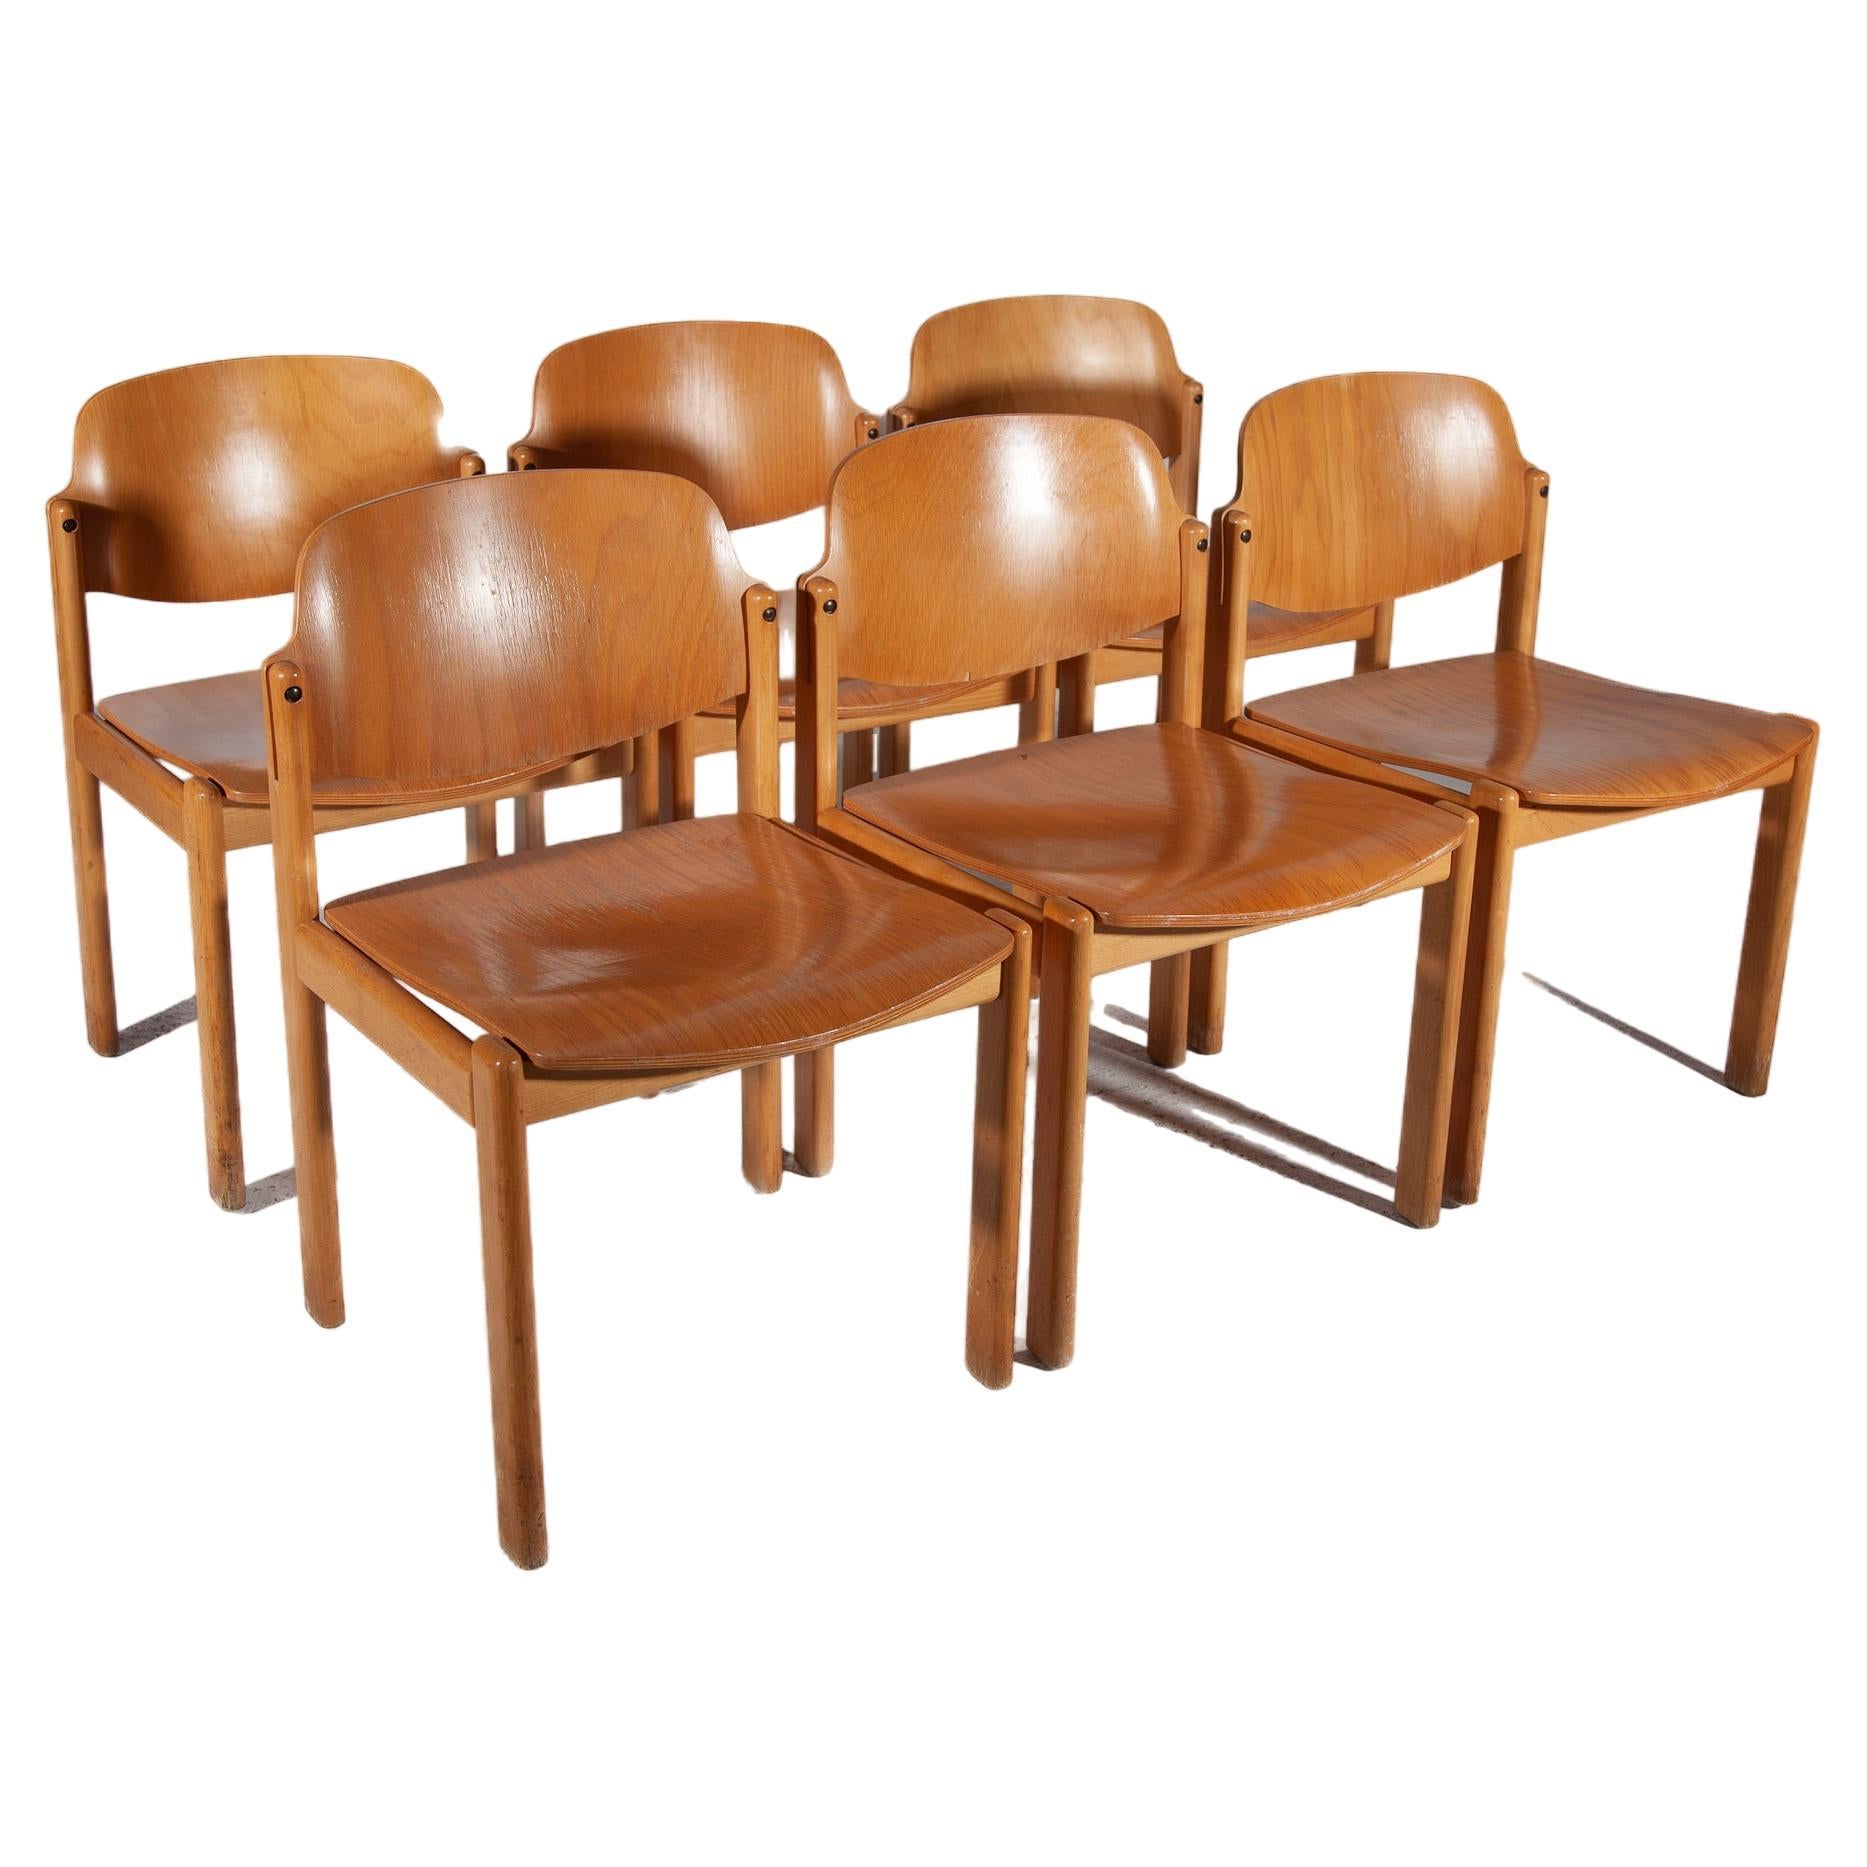 Satz von 6 Stühlen aus massiver Buche und Sperrholz, Deutschland 1970er Jahre. Die Stühle sind solide, robuste Stühle, mit hohem Sitzkomfort für Holzstühle. Die Stühle sind gut gemacht in einer schweren Qualität, unzerstörbar, langlebig.Preis ein